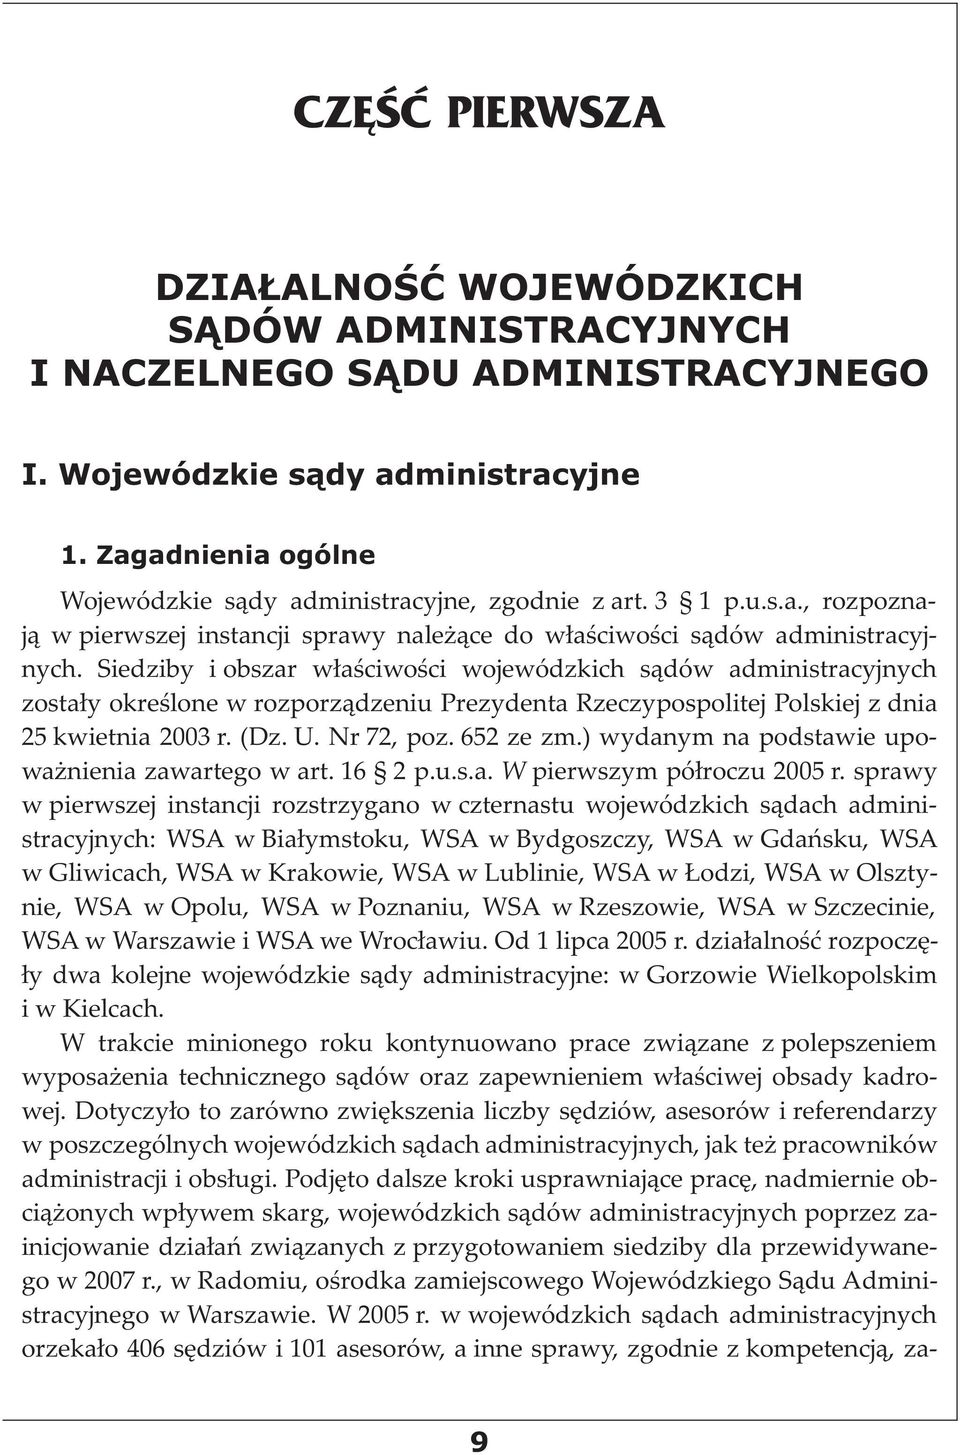 Siedziby i obszar właściwości wojewódzkich sądów administracyjnych zostały określone w rozporządzeniu Prezydenta Rzeczypospolitej Polskiej z dnia 25 kwiet nia 2003 r. (Dz. U. Nr 72, poz. 652 ze zm.